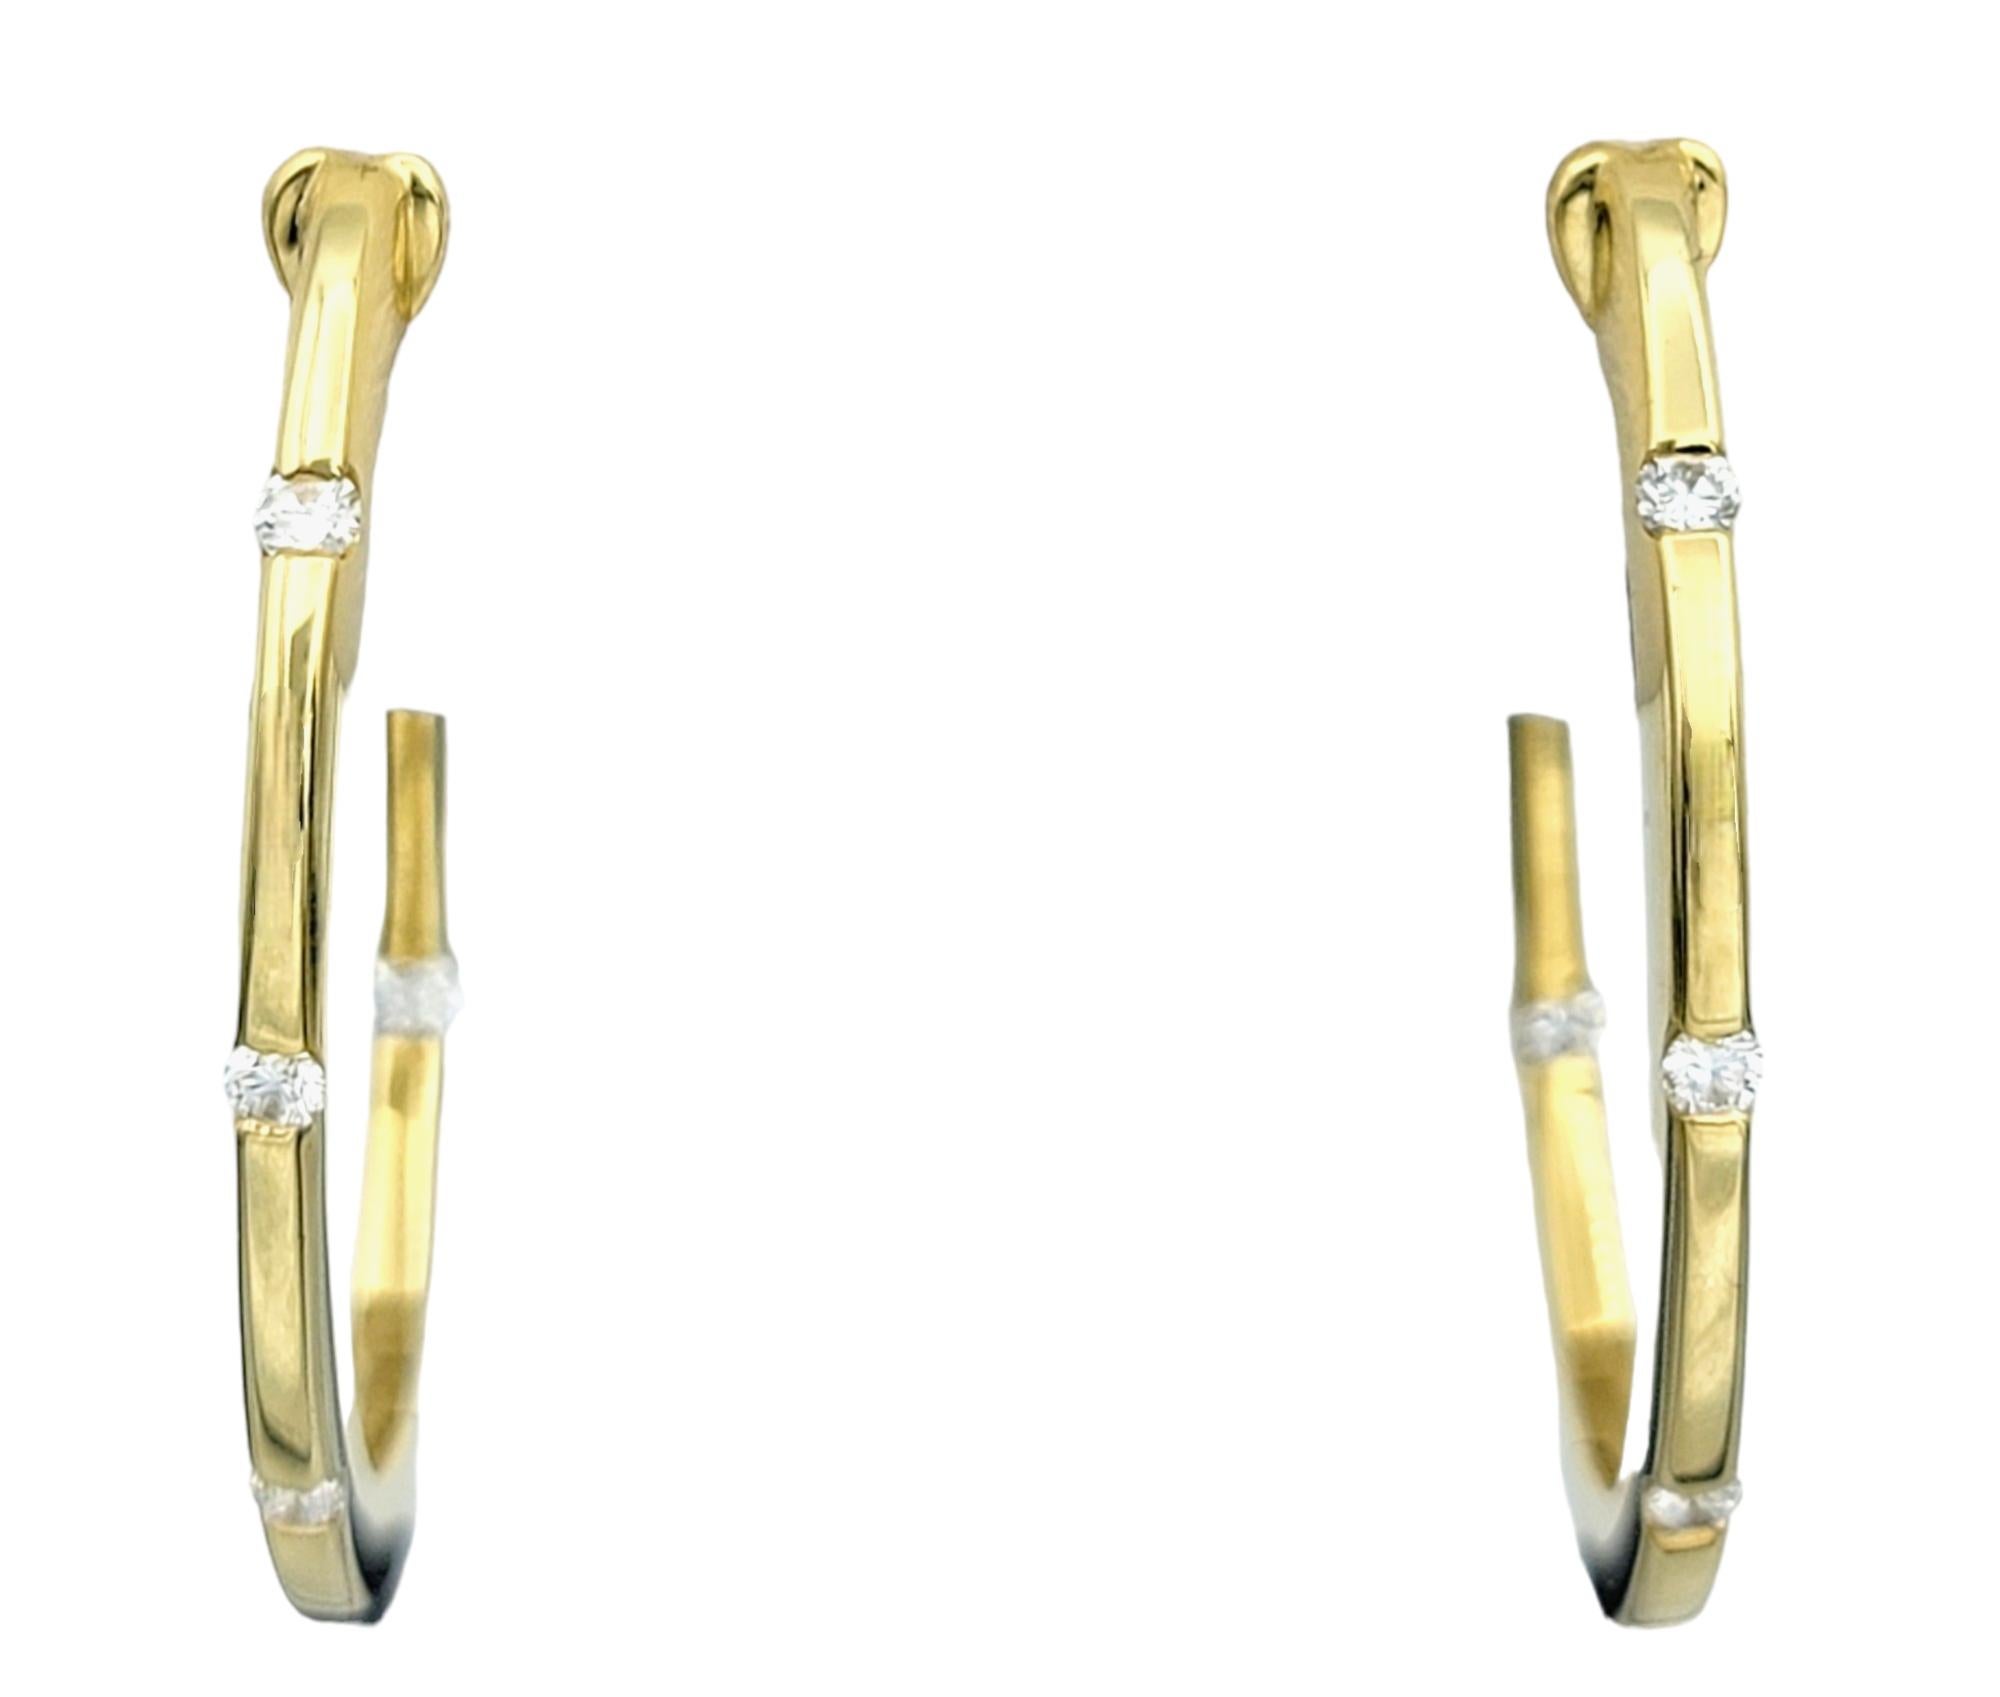 Ces superbes boucles d'oreilles de Roberto Coin, fabriquées dans un luxueux or jaune 18 carats, présentent un design intemporel orné de diamants éblouissants, ajoutant une touche de sophistication à tout ensemble. La brillance des diamants est